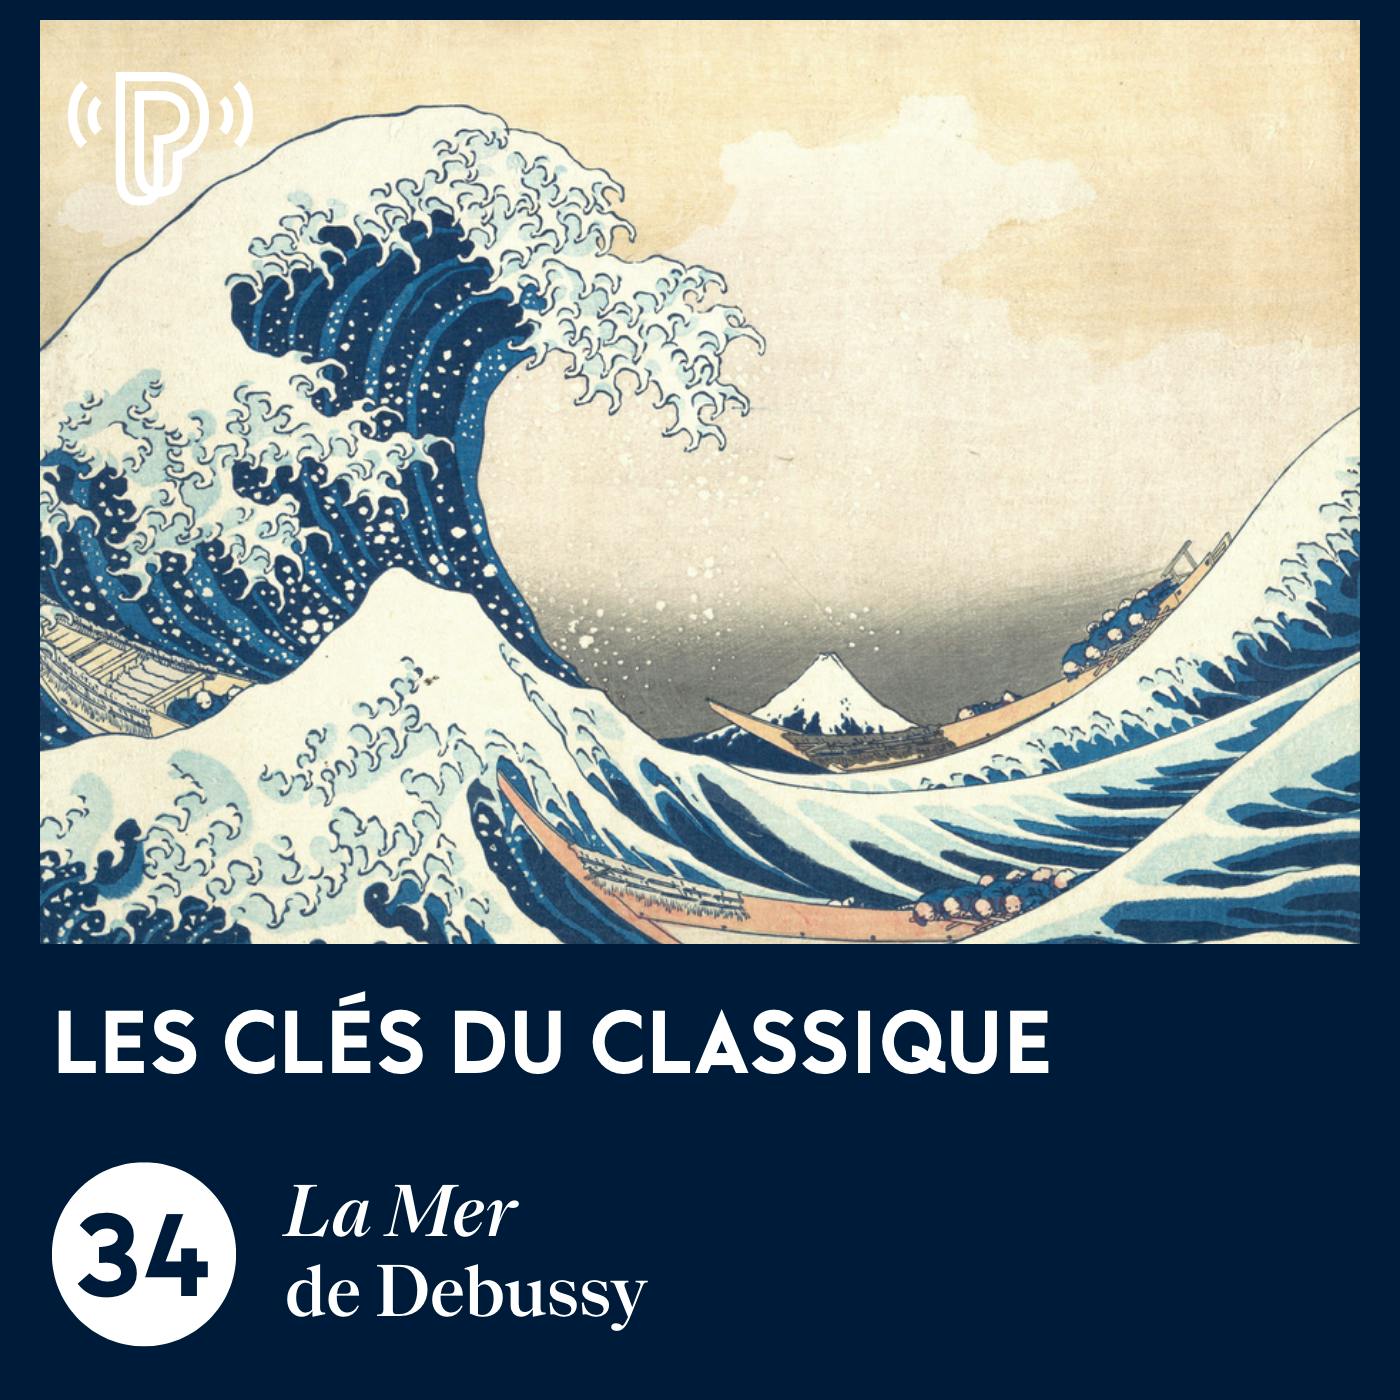 La Mer de Debussy | Les Clés du classique #34